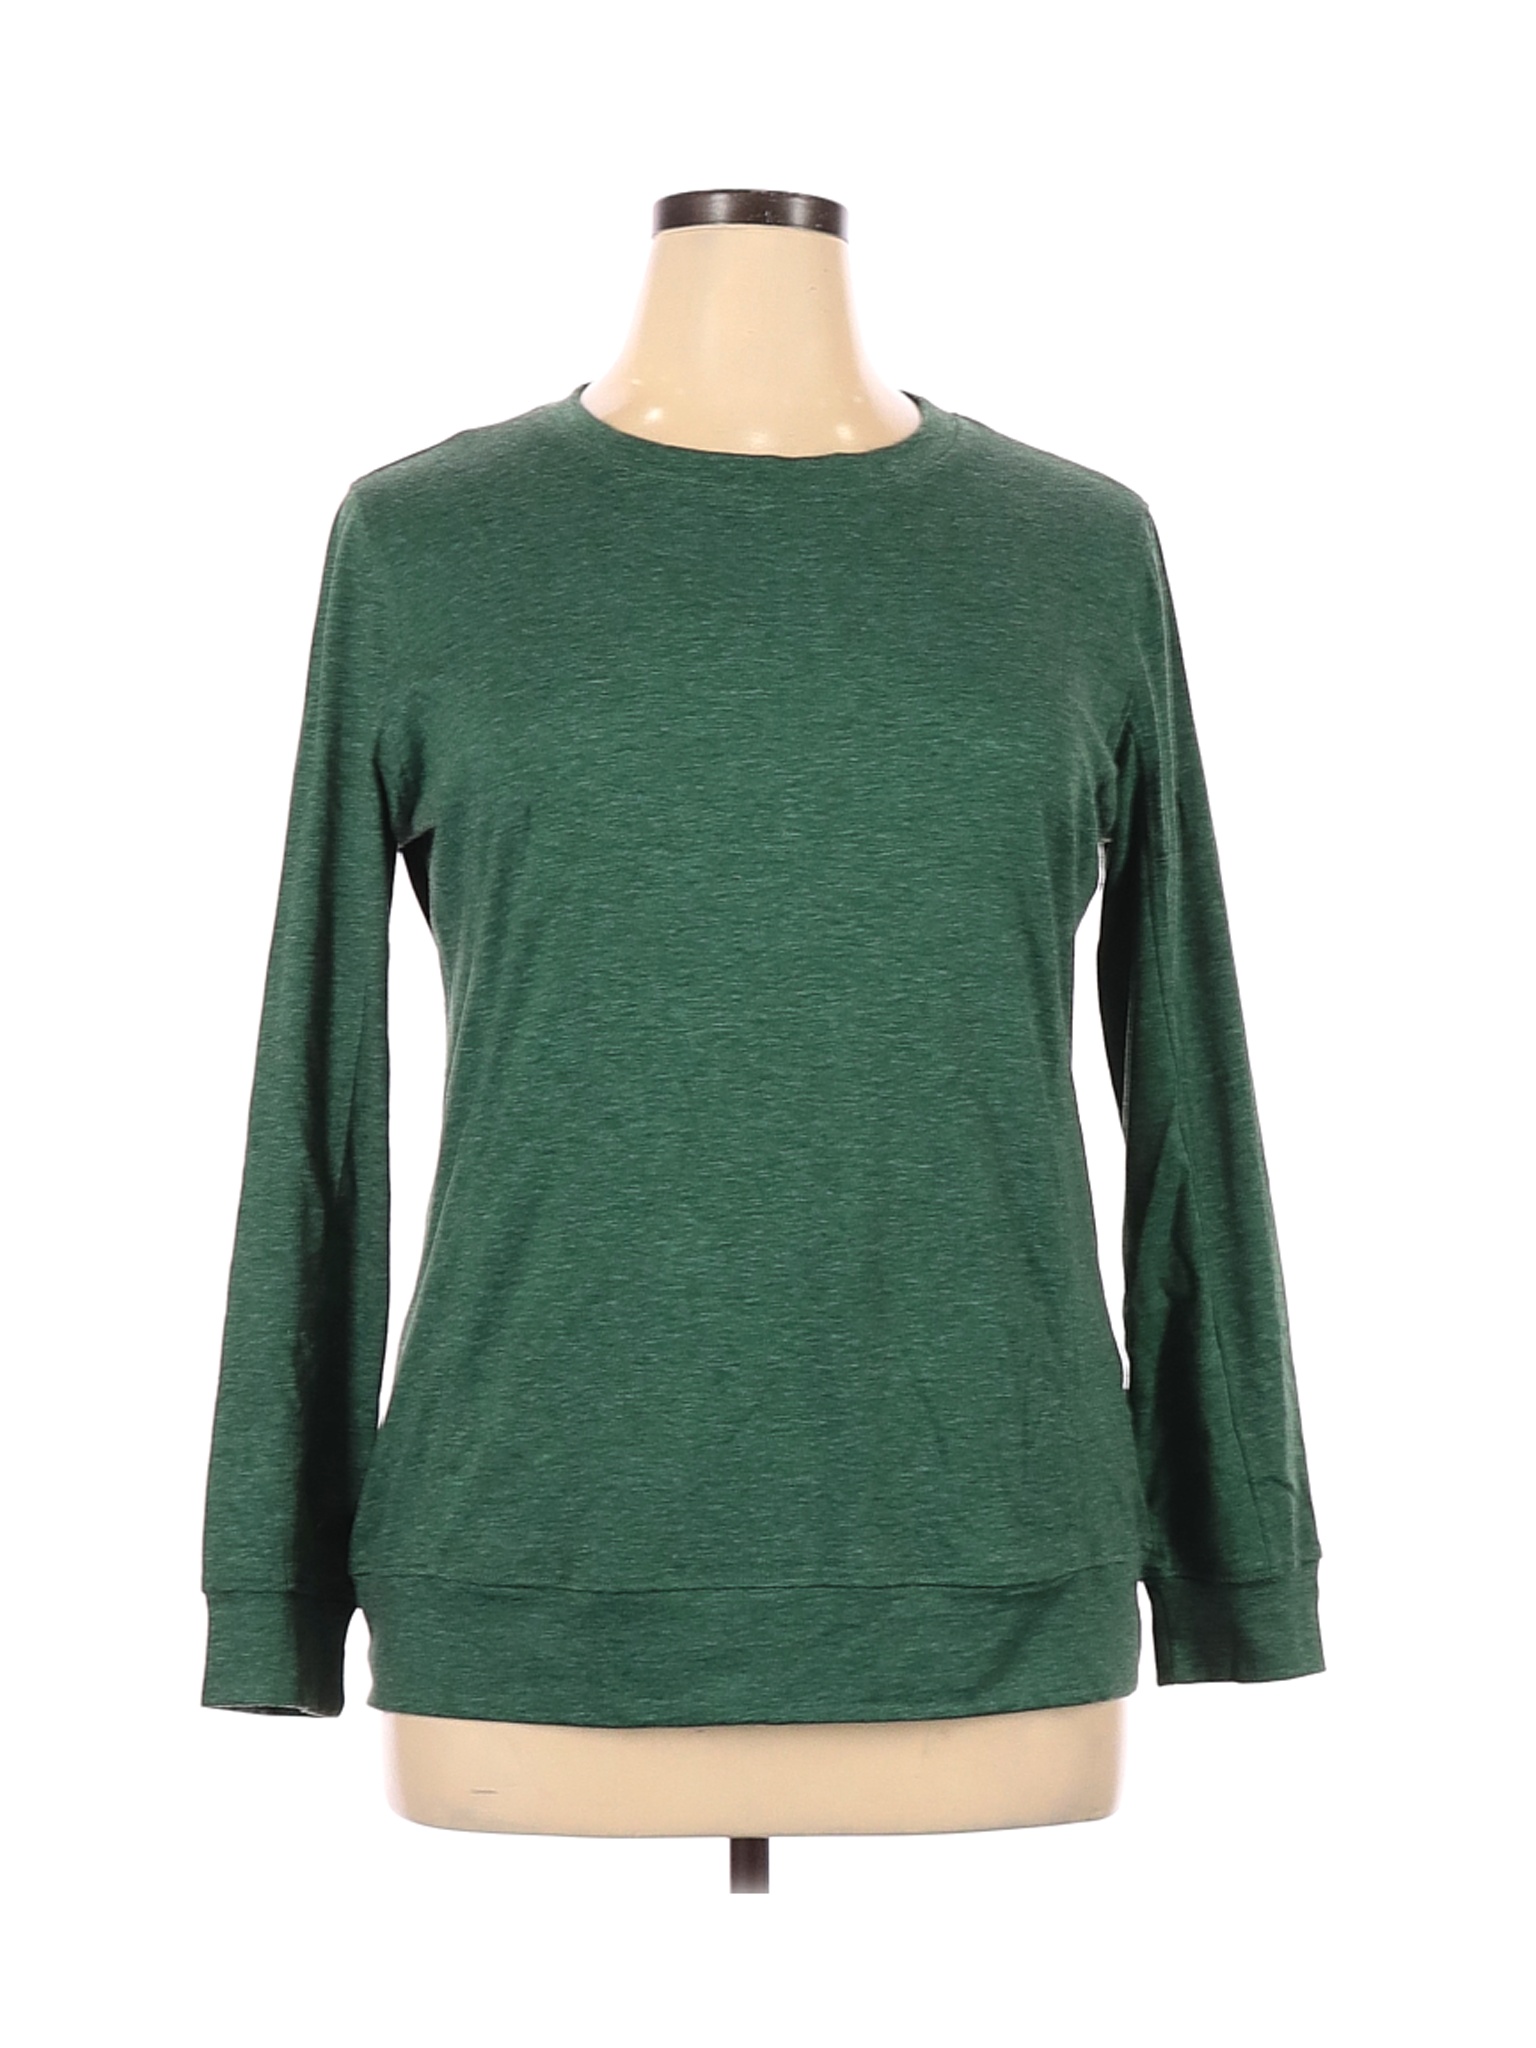 Misslook Women Green Long Sleeve T-Shirt XL | eBay